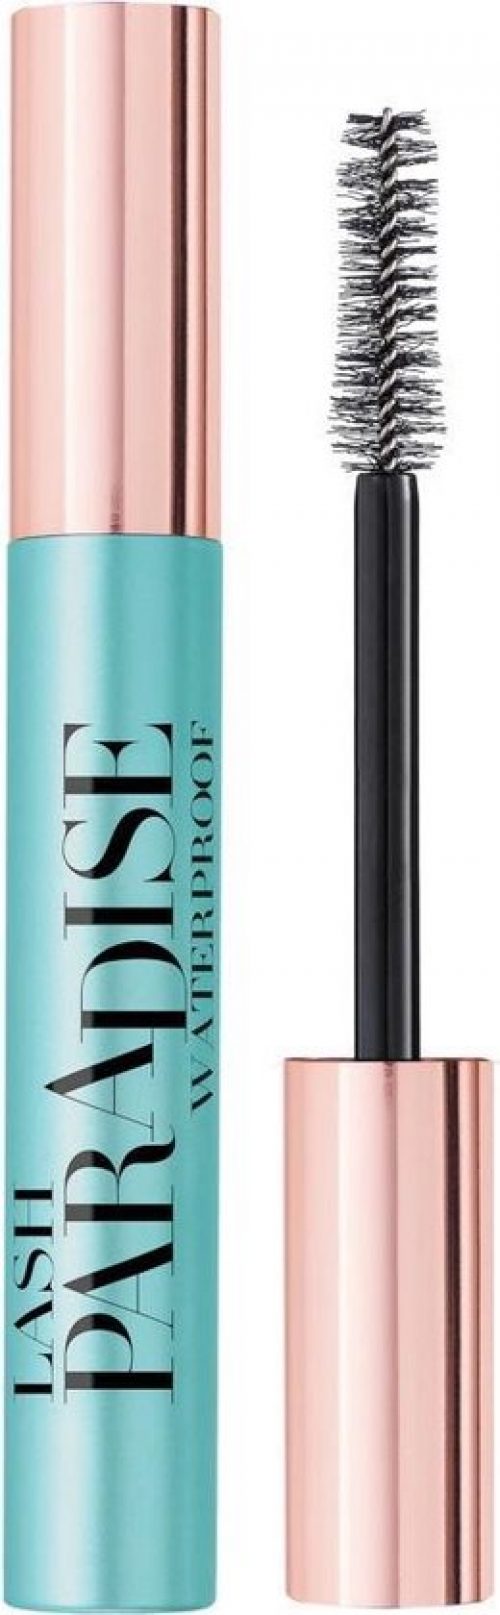 L’Oréal Paris - Lash Paradise Mascara Waterproof - 6,4 ml (Paradise Extatic)